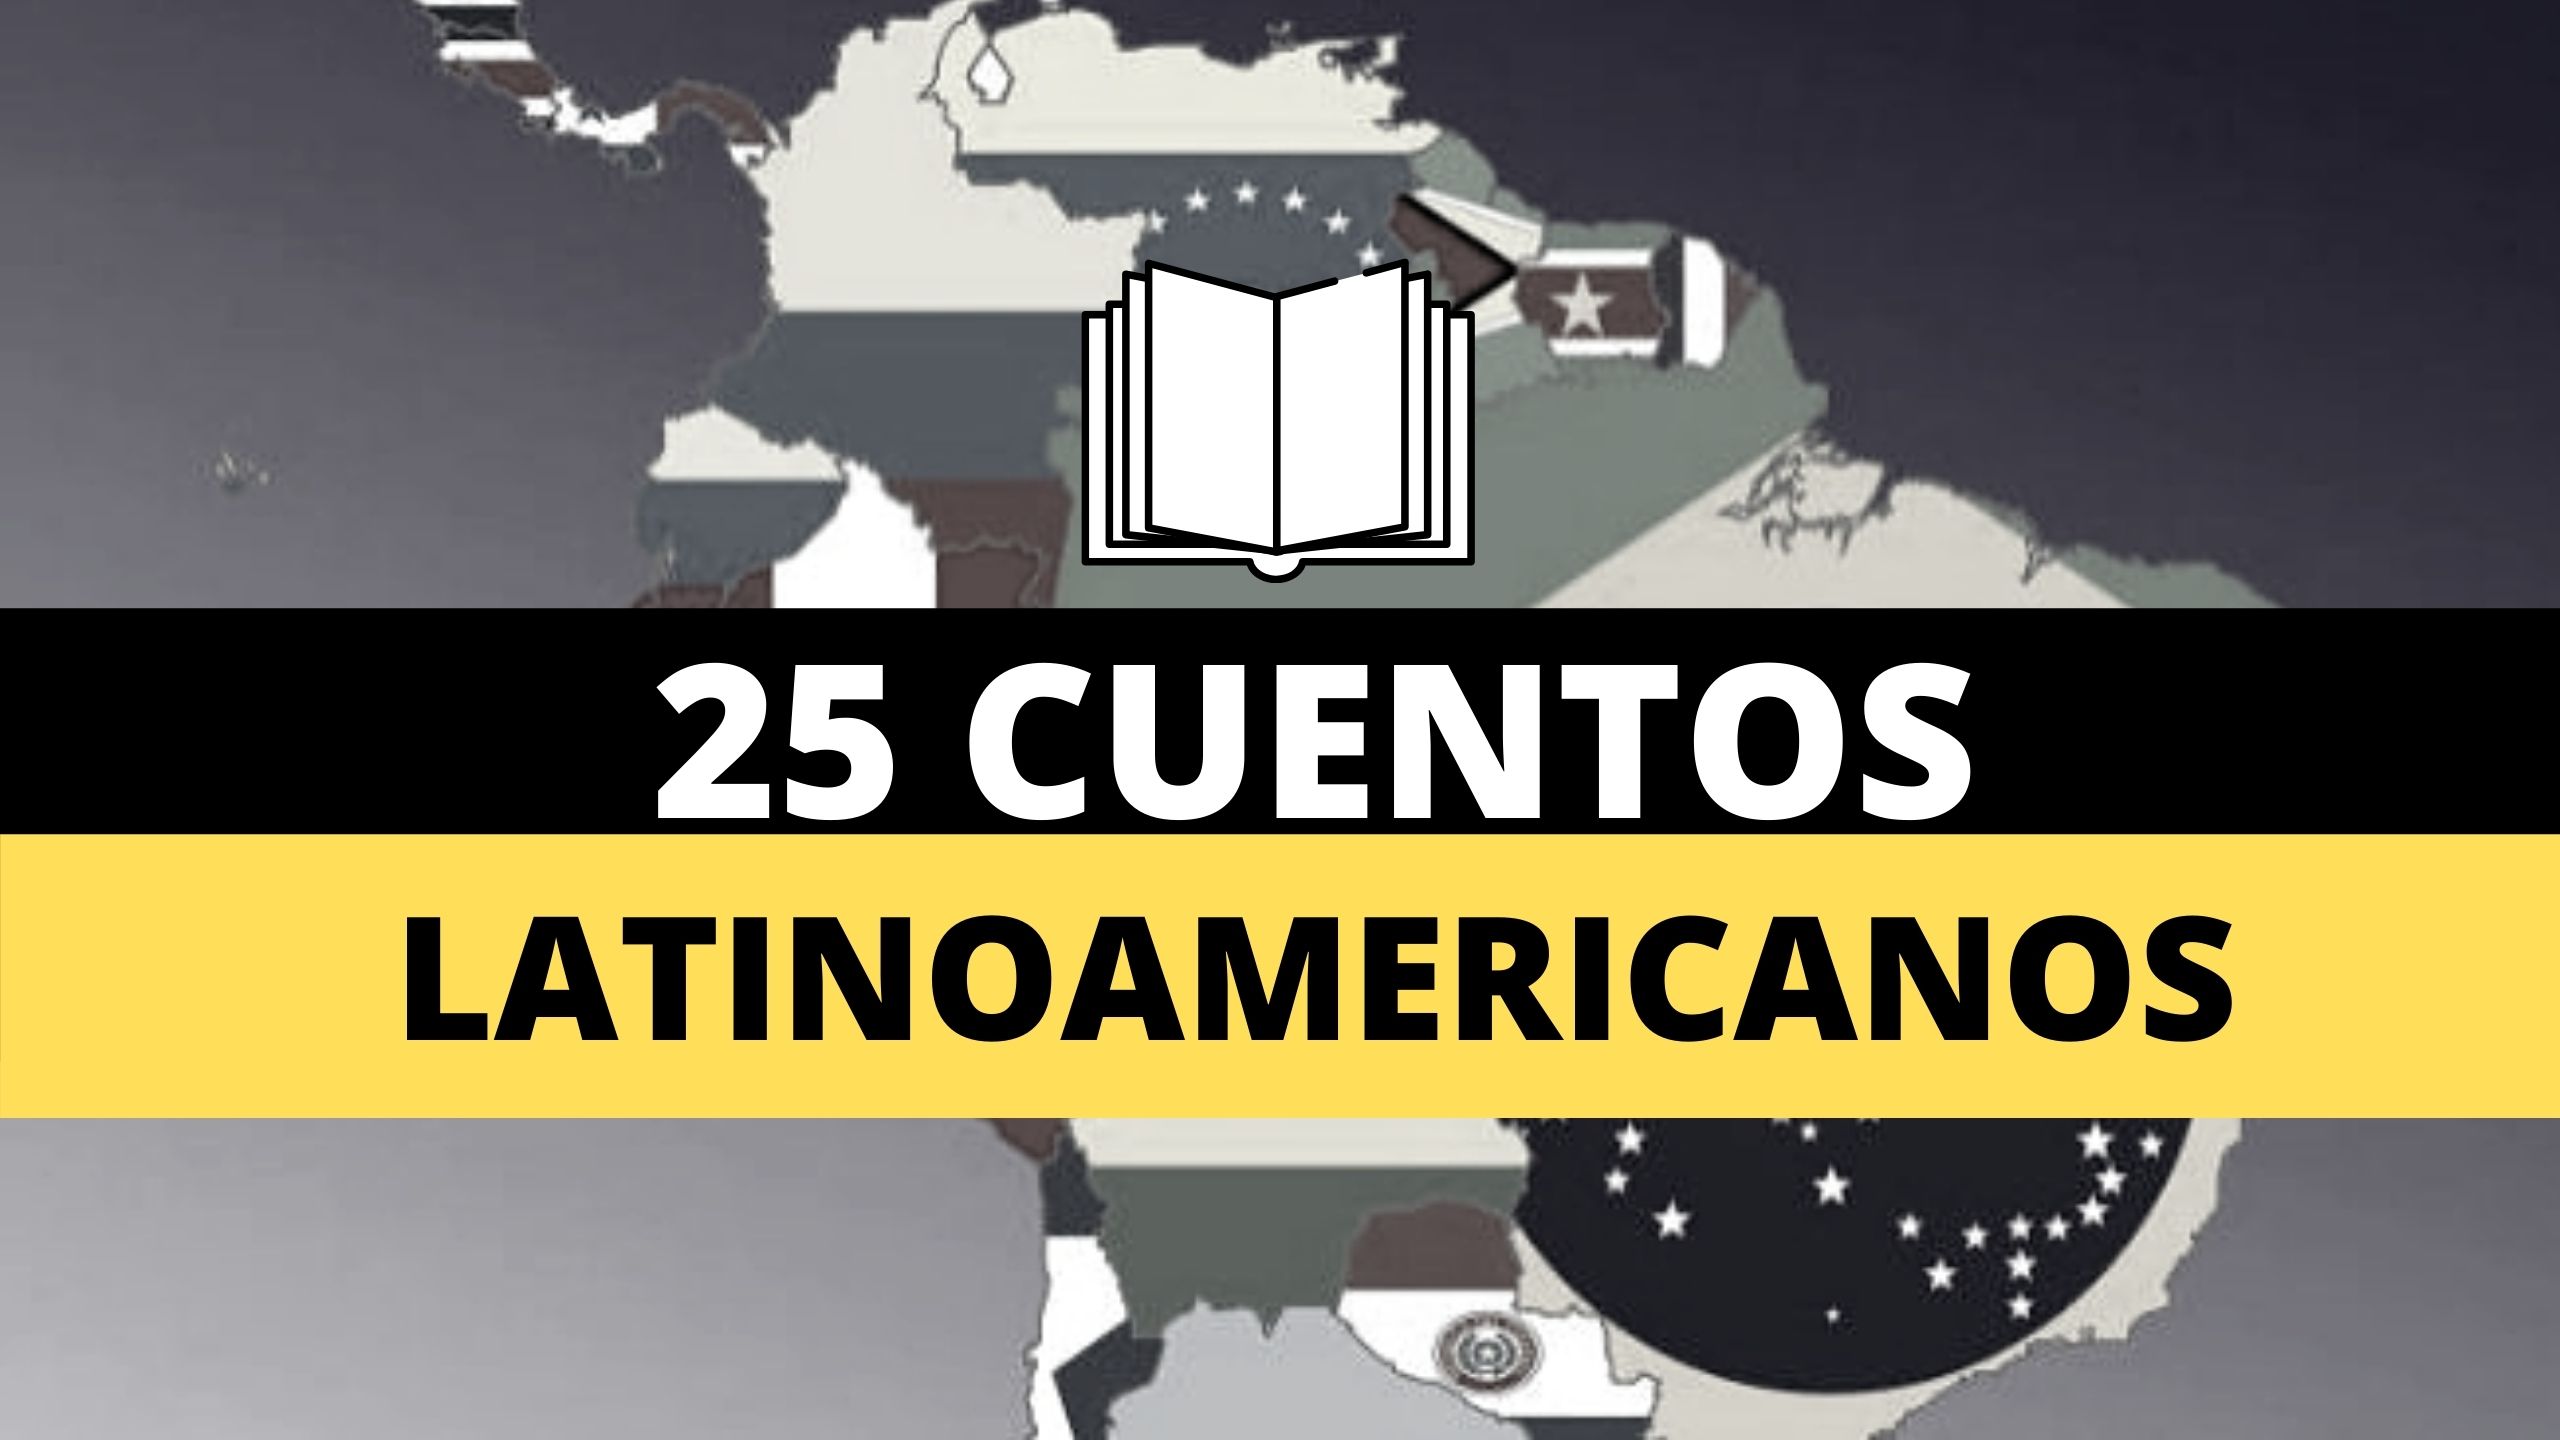 25 cuentos latinoamericanos para leer en cualquier momento | El Buen Librero